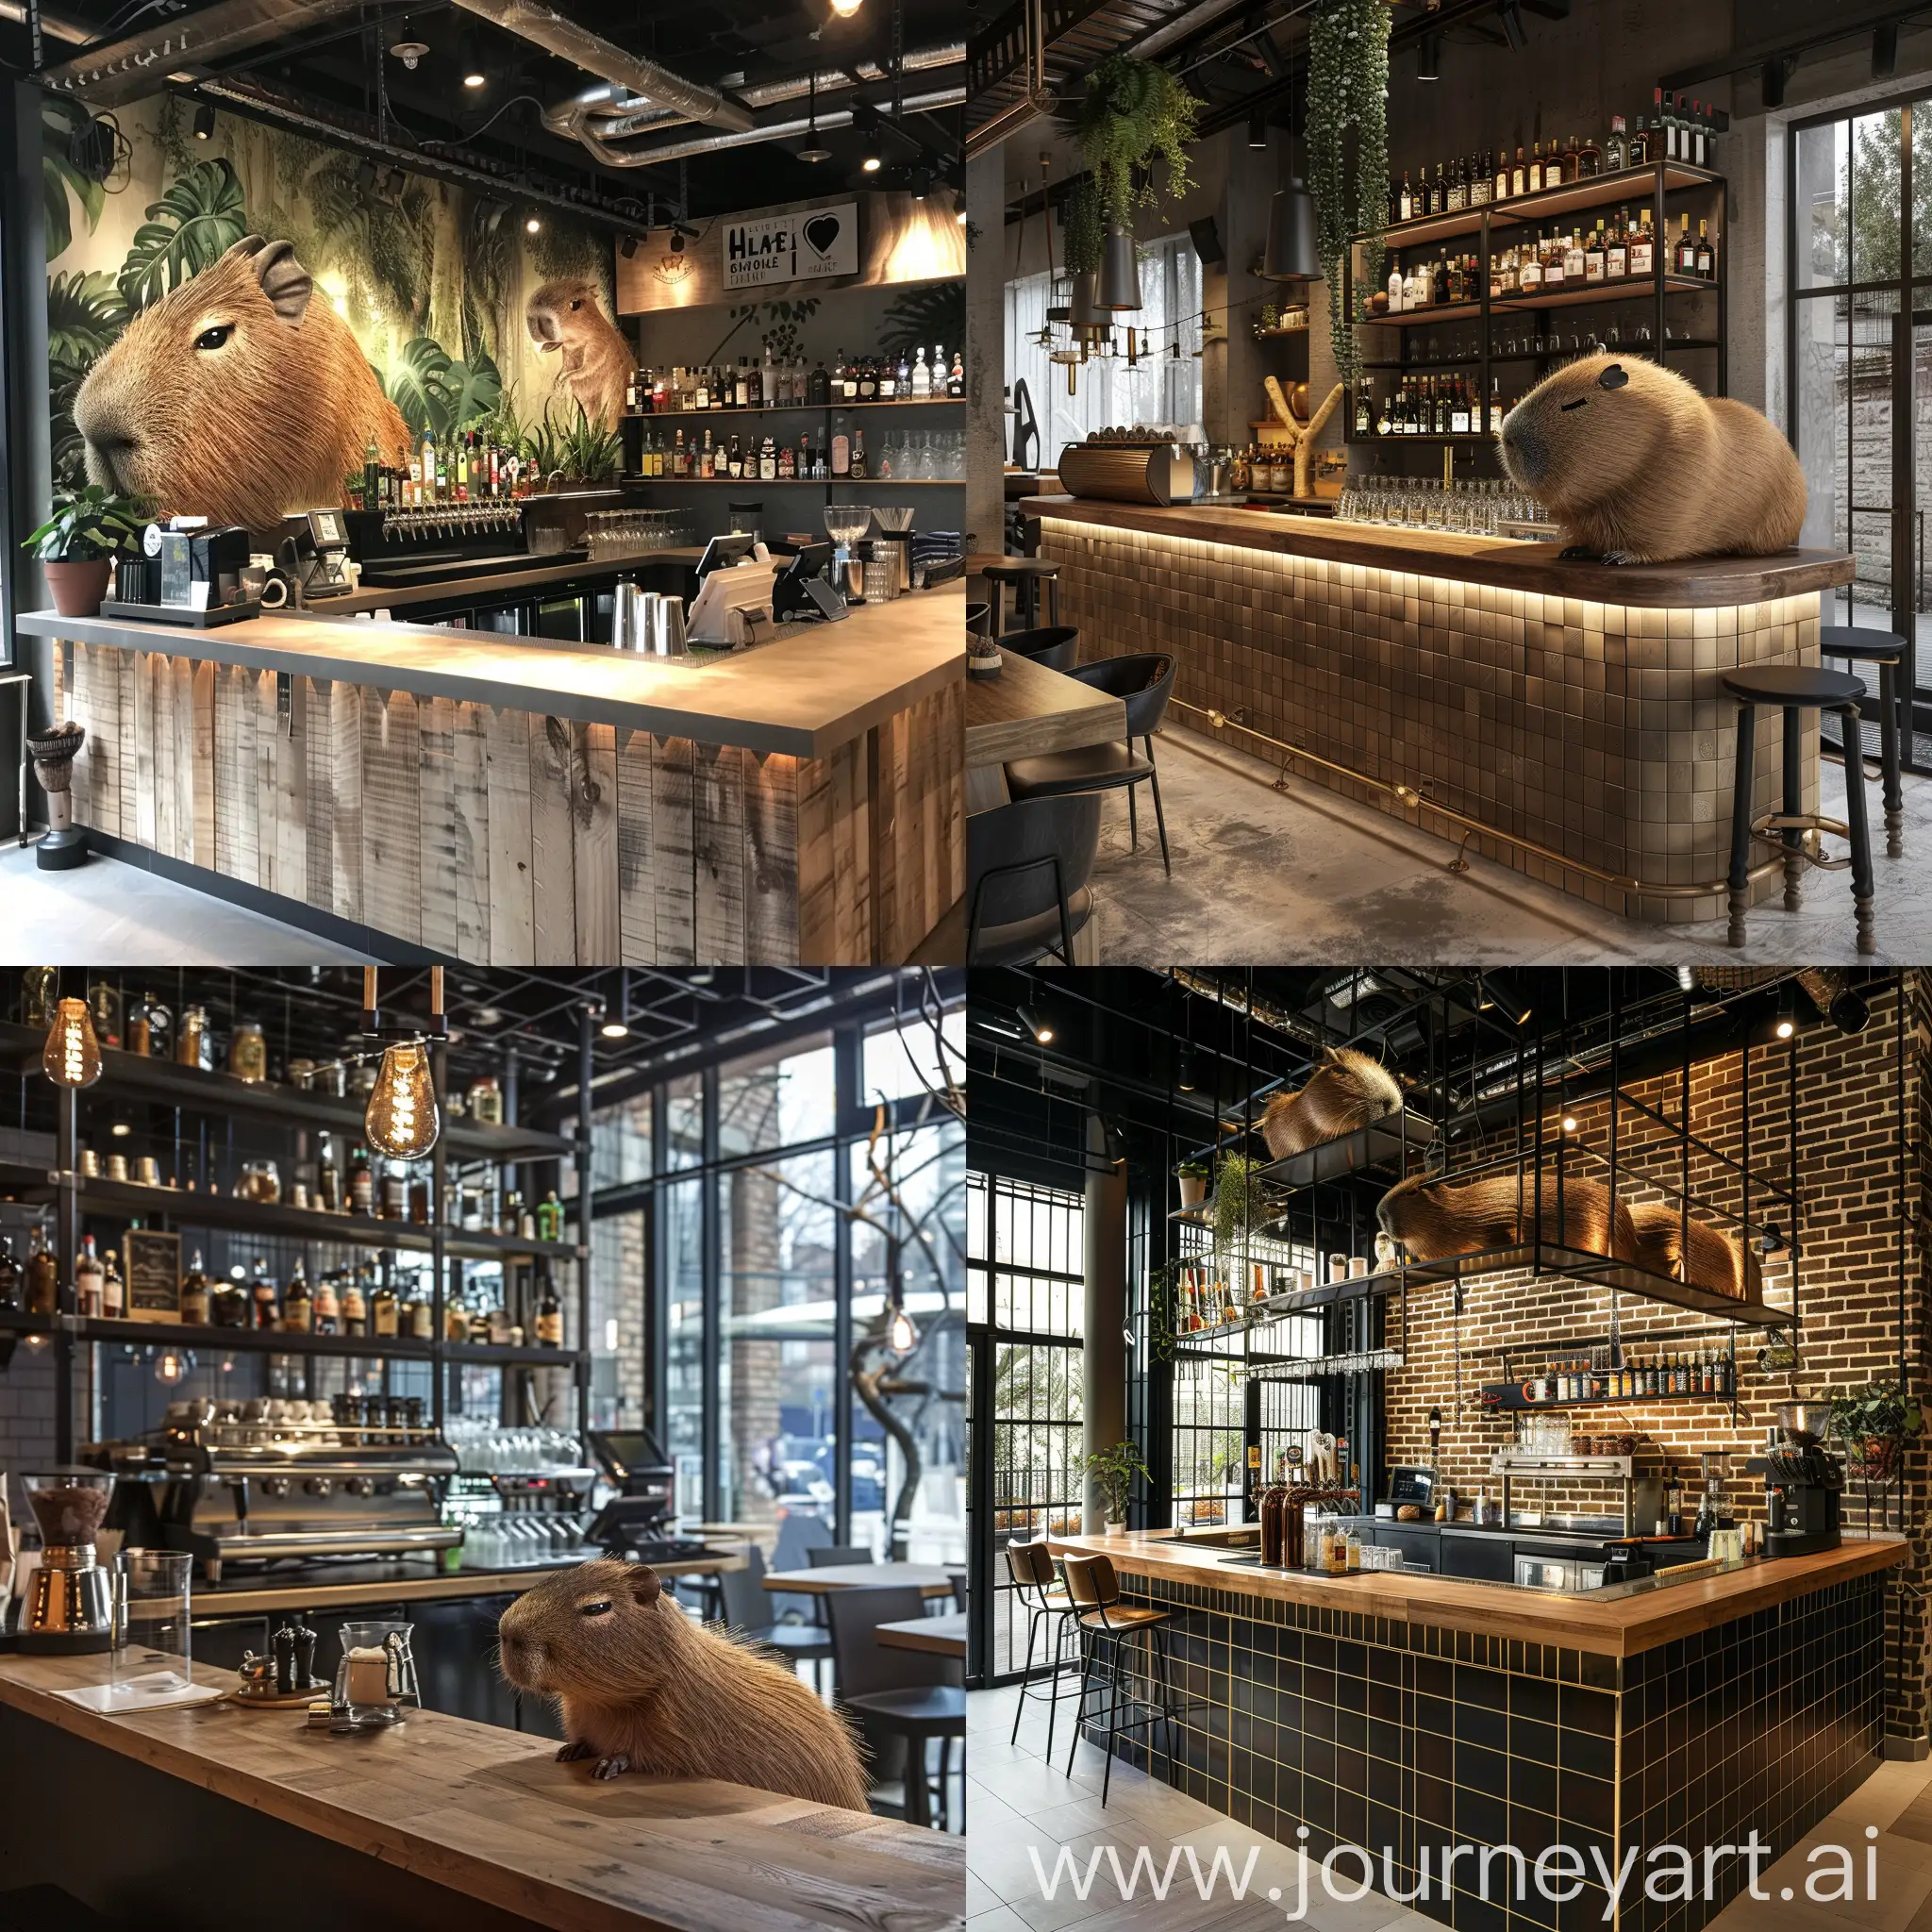 Urban-Caf-Bar-Counter-with-Capybara-Theme